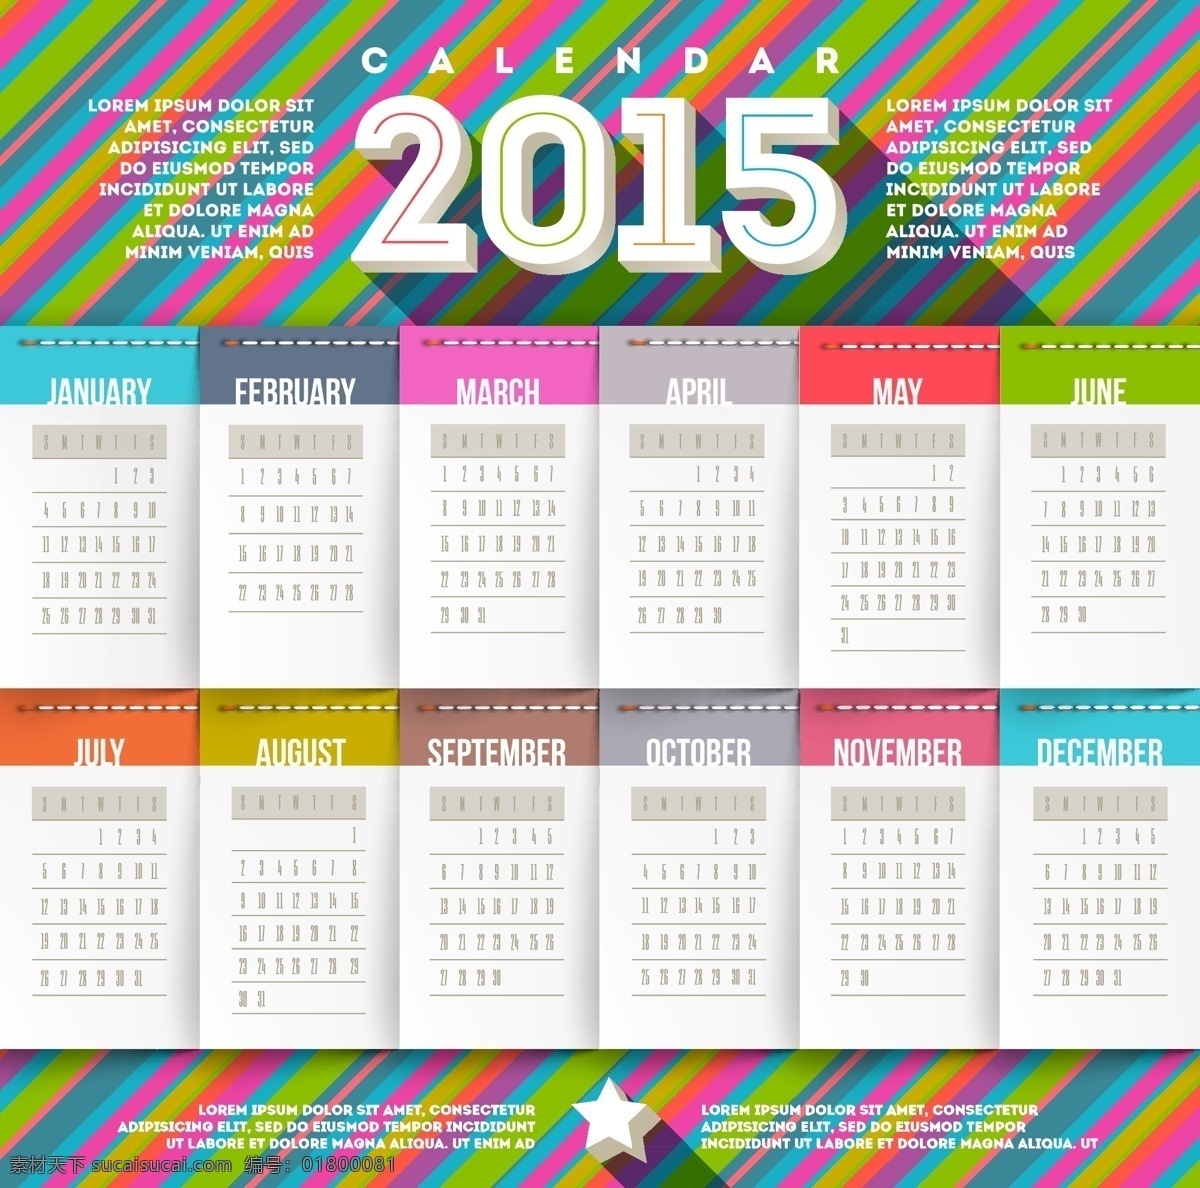 2015 色彩 条纹 日历 设计素材 模板 年 日历素材 条纹日历 节日素材 2015羊年